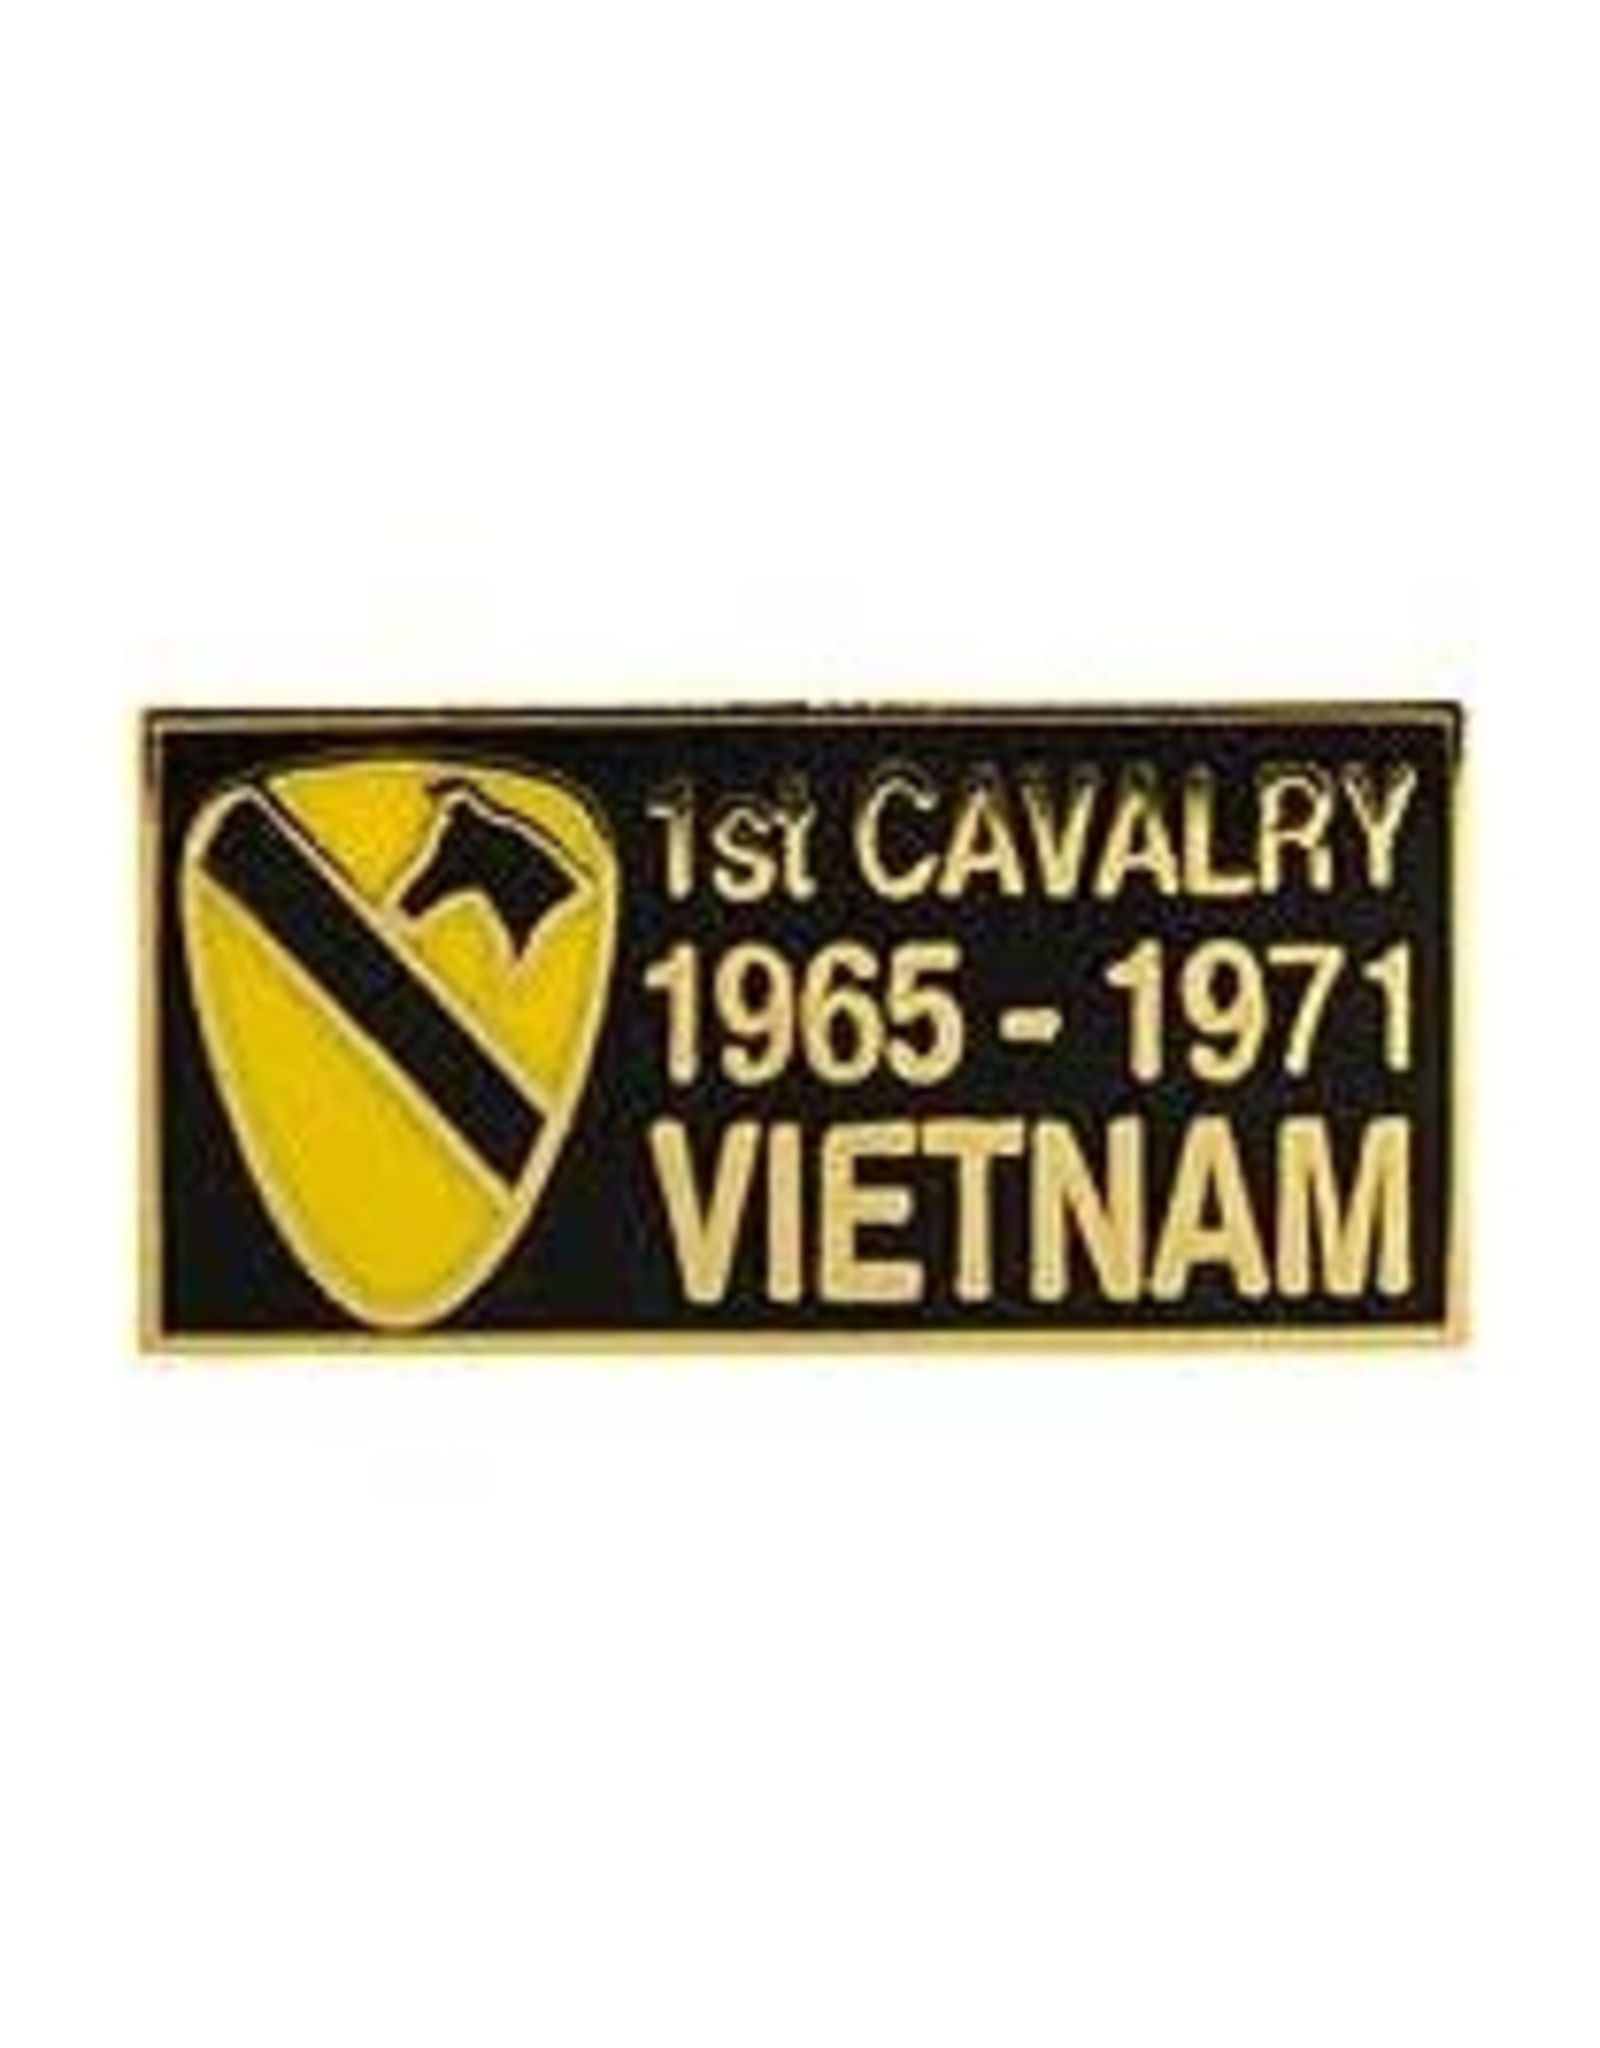 Pin - Vietnam Bdg 1st Cavalry Divison 65-72